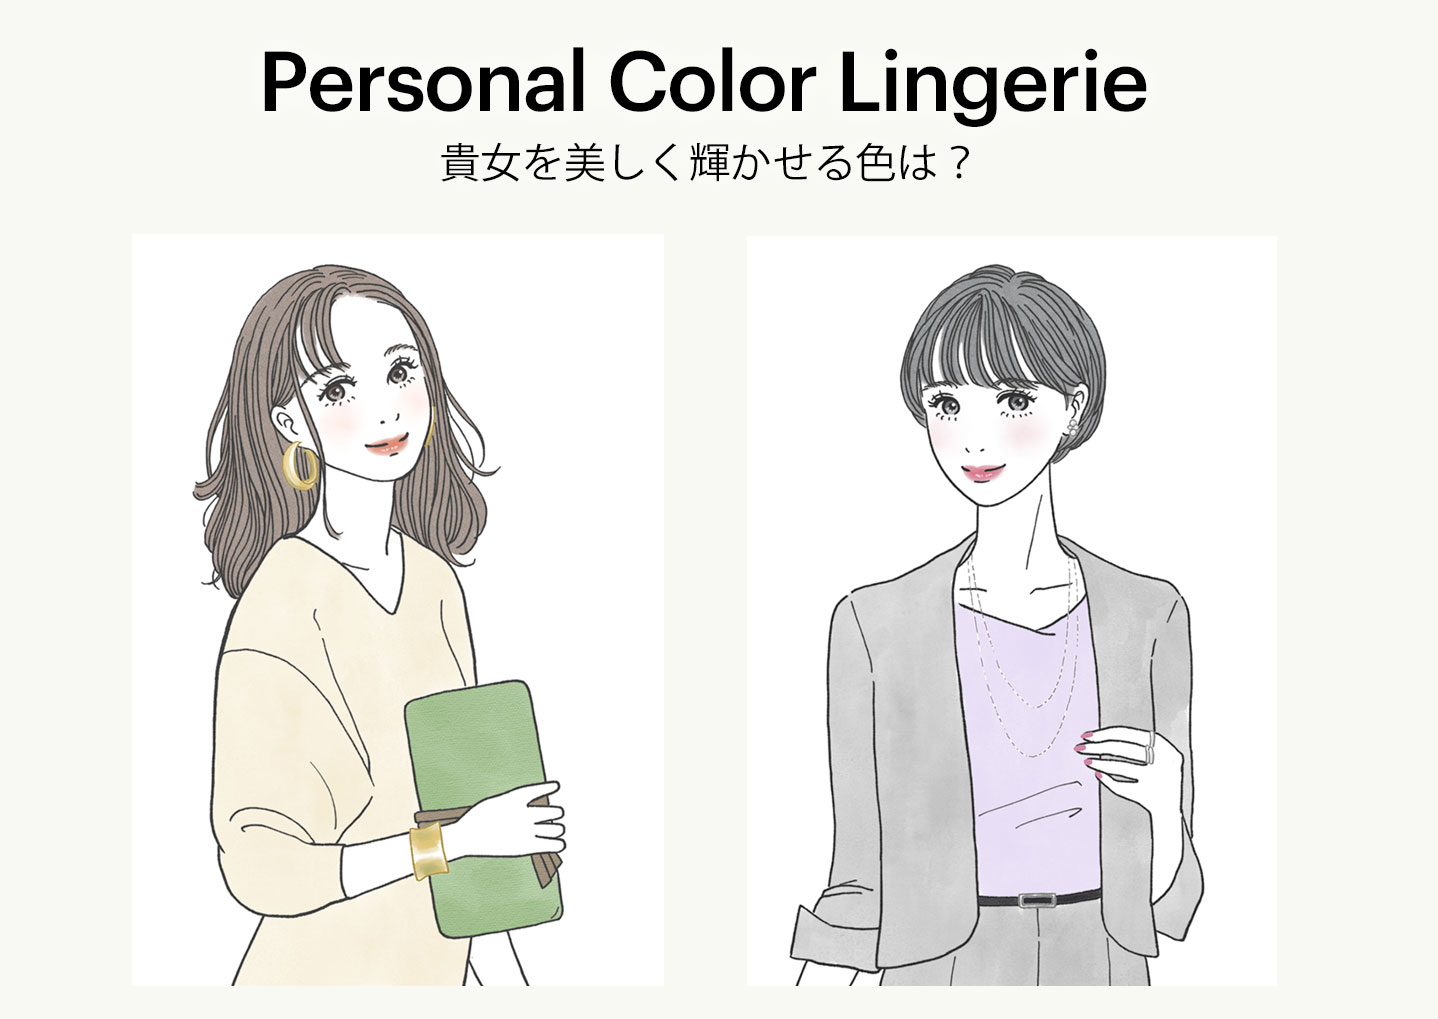 Personal Color Lingerie